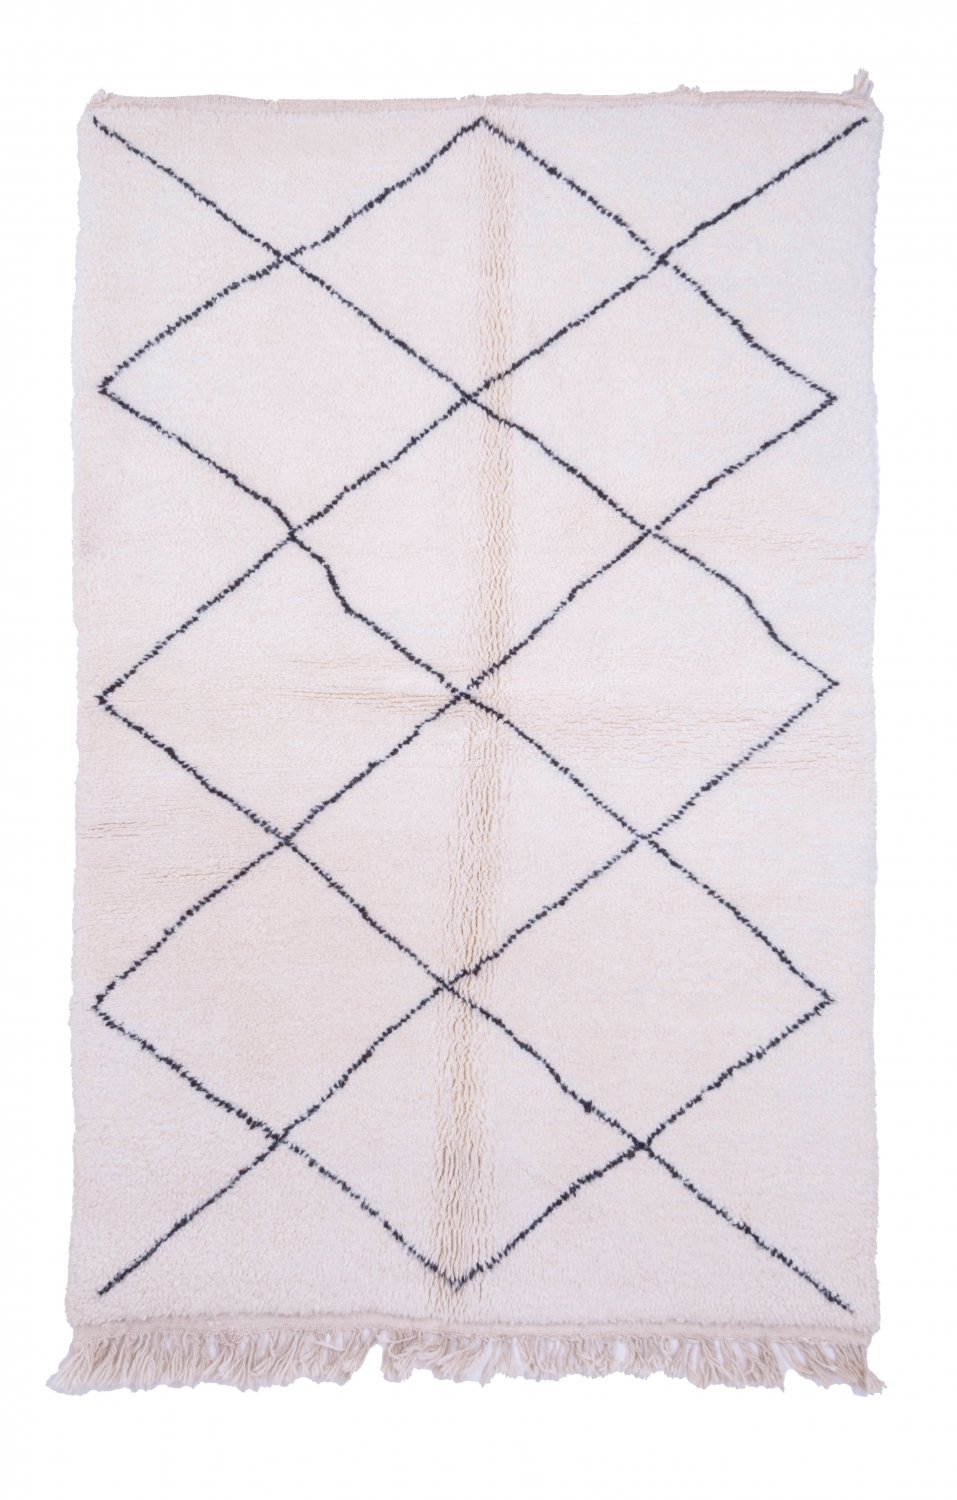 Marokkolainen Kilim matto Beni Ouarain 245 x 155 cm